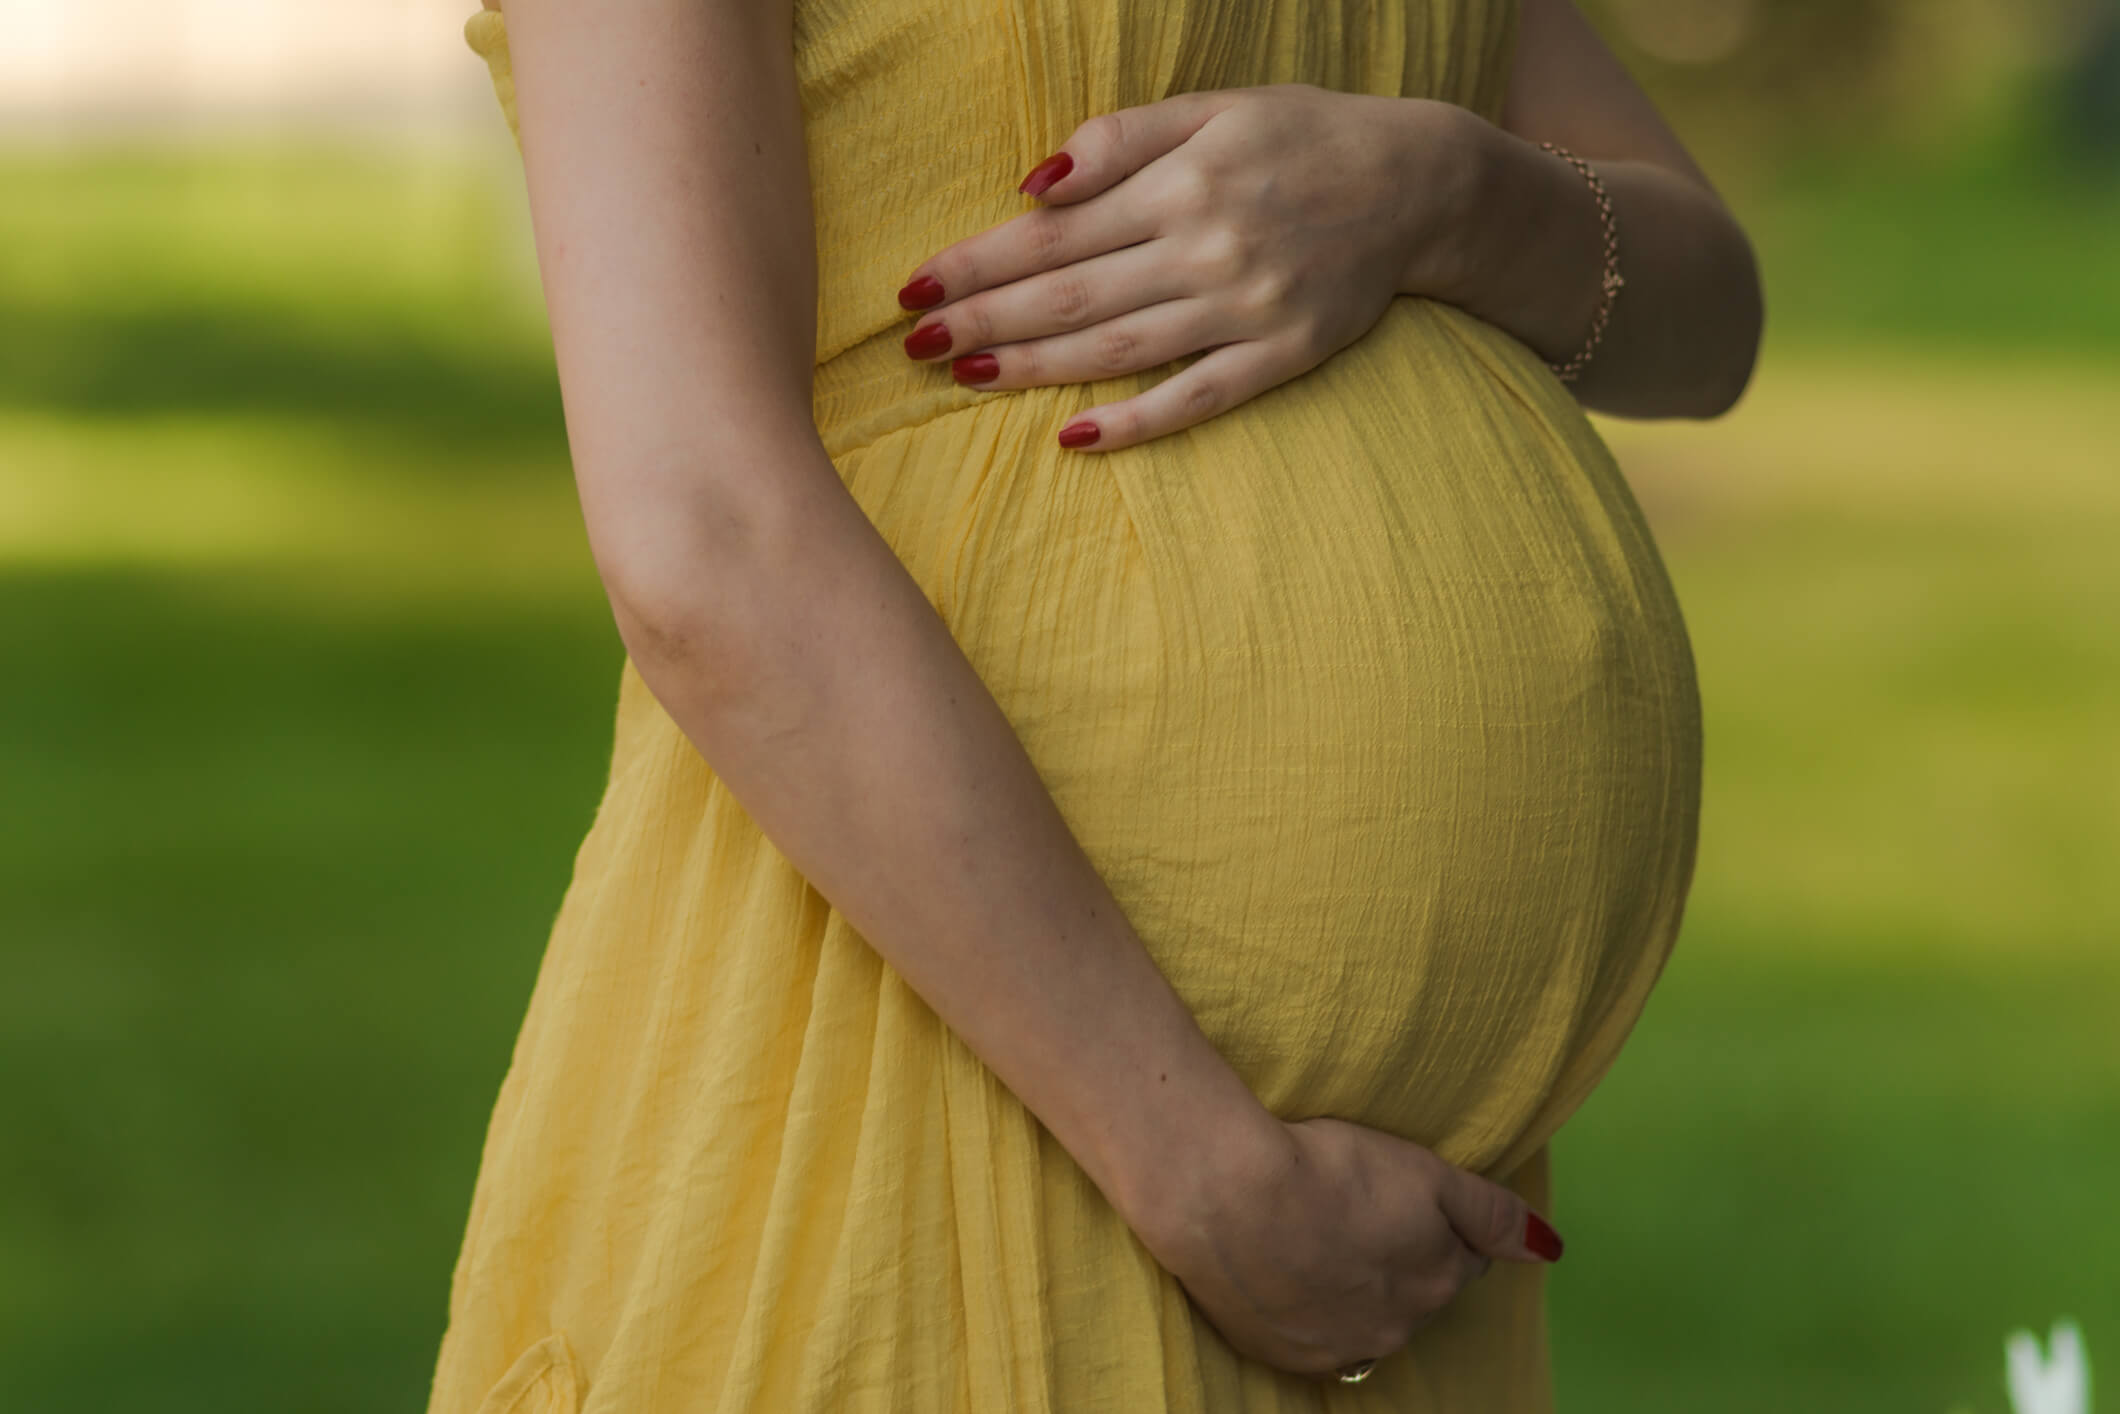 surrogacy process does parents